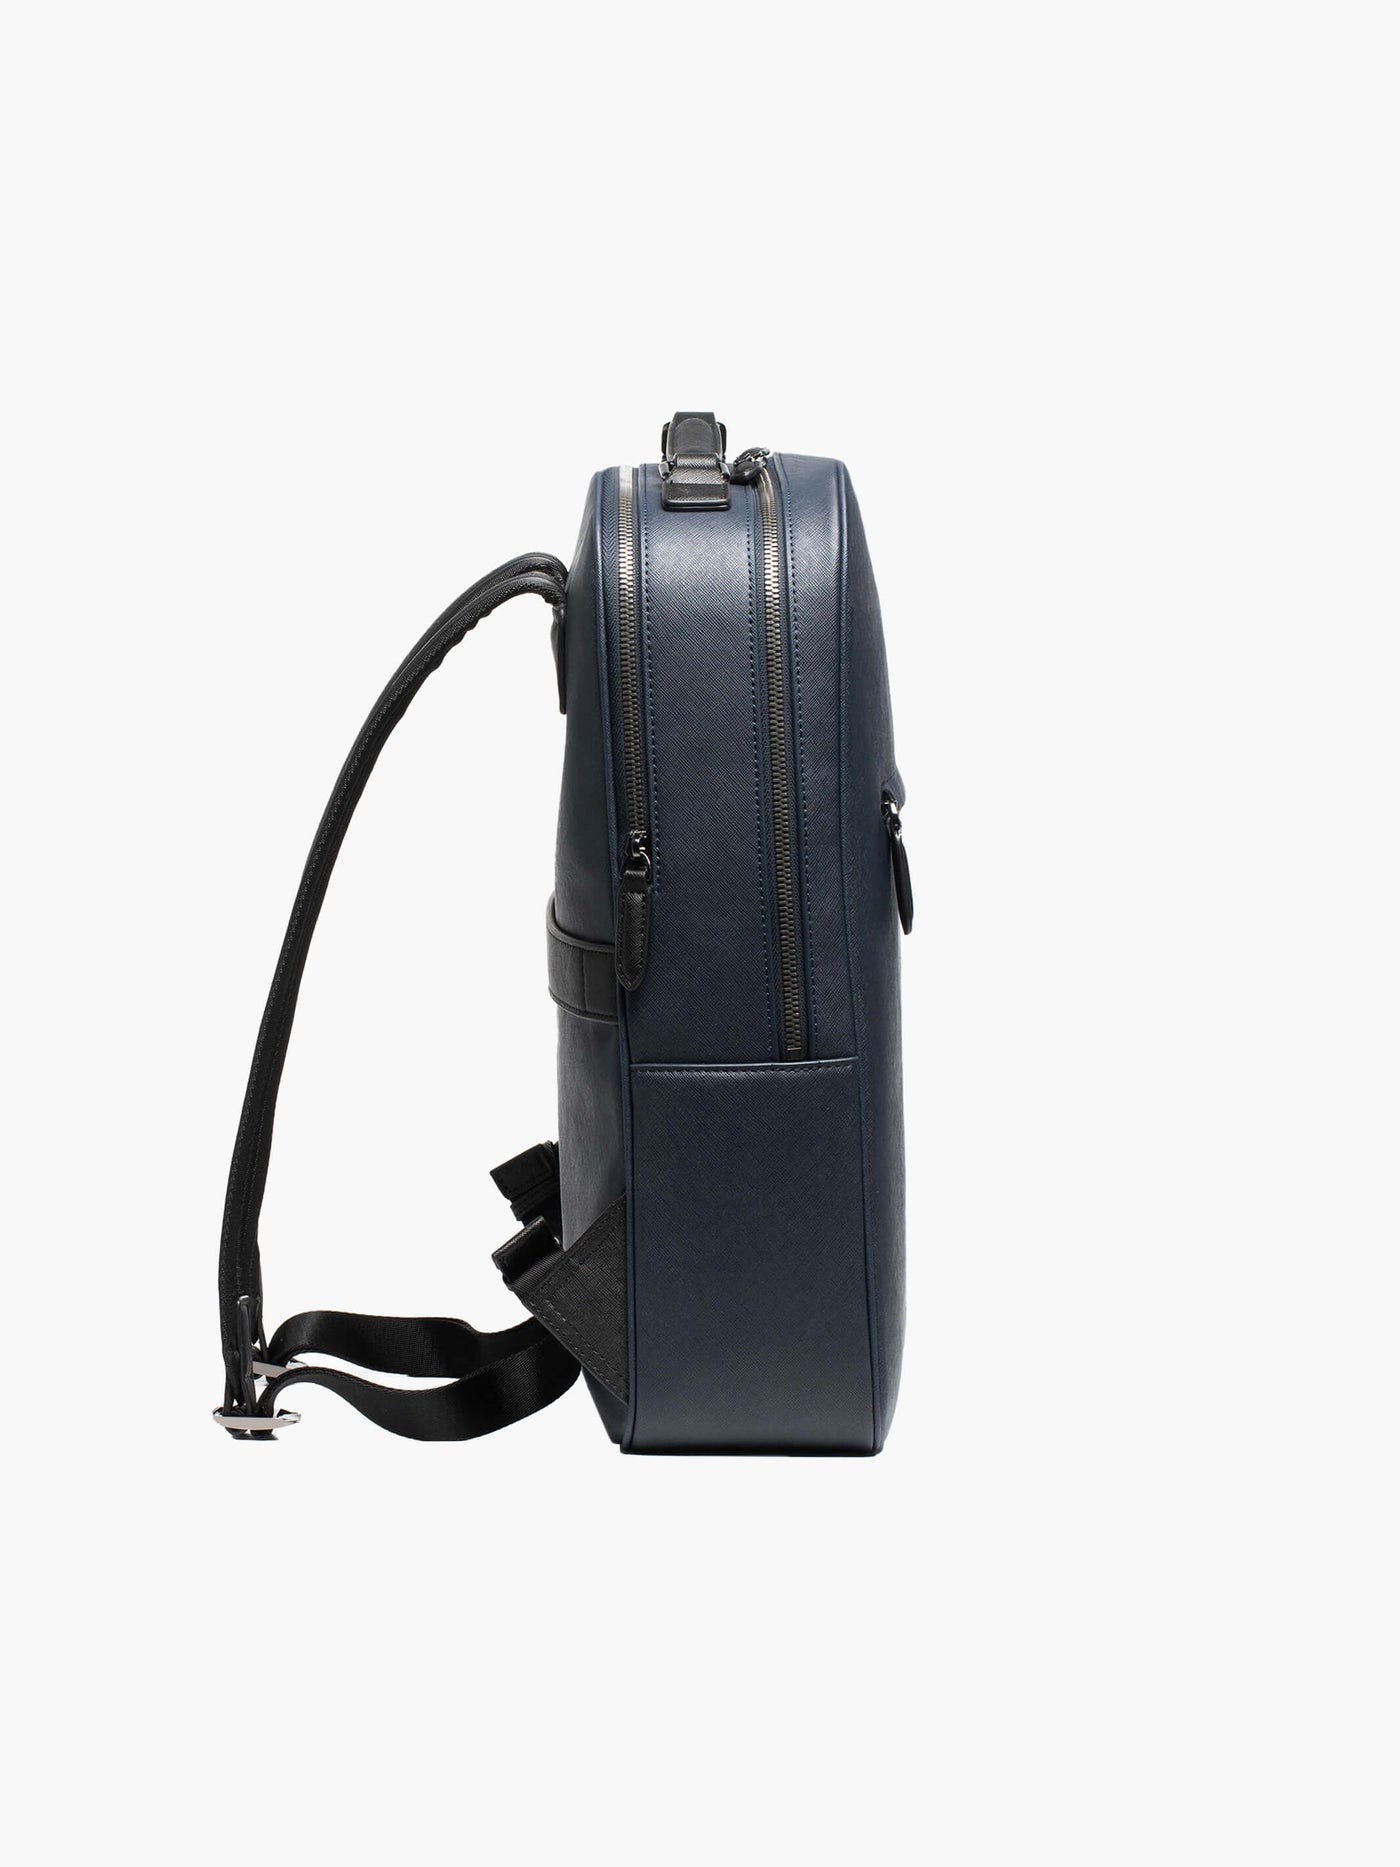  PORSCHE DESIGN Urban Eco Shoulder Bag S, Black : Everything Else